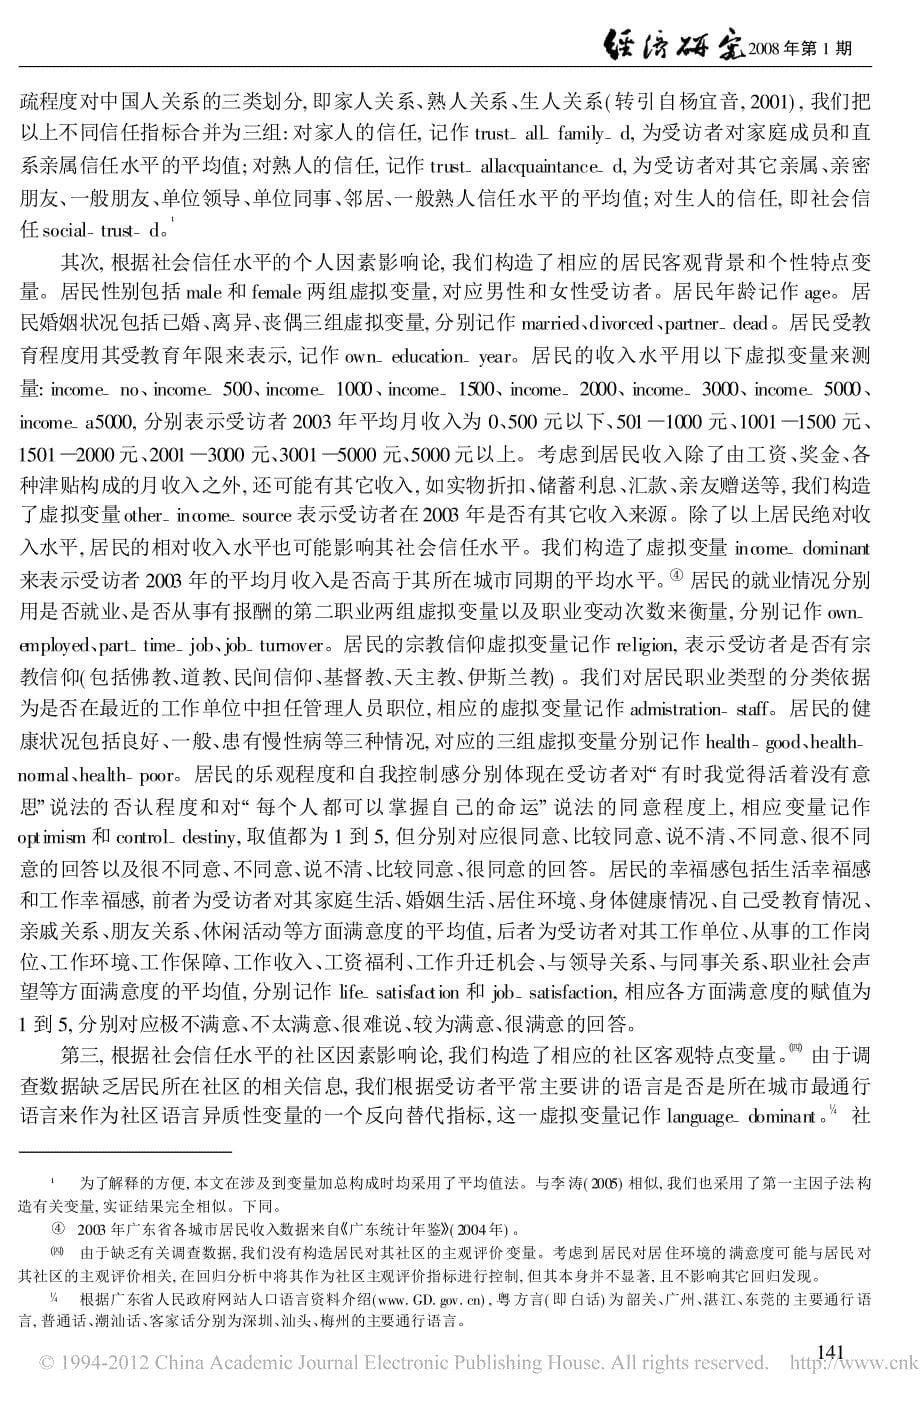 什么影响了居民的社会信任水平_来自广东省的经验证据_第5页